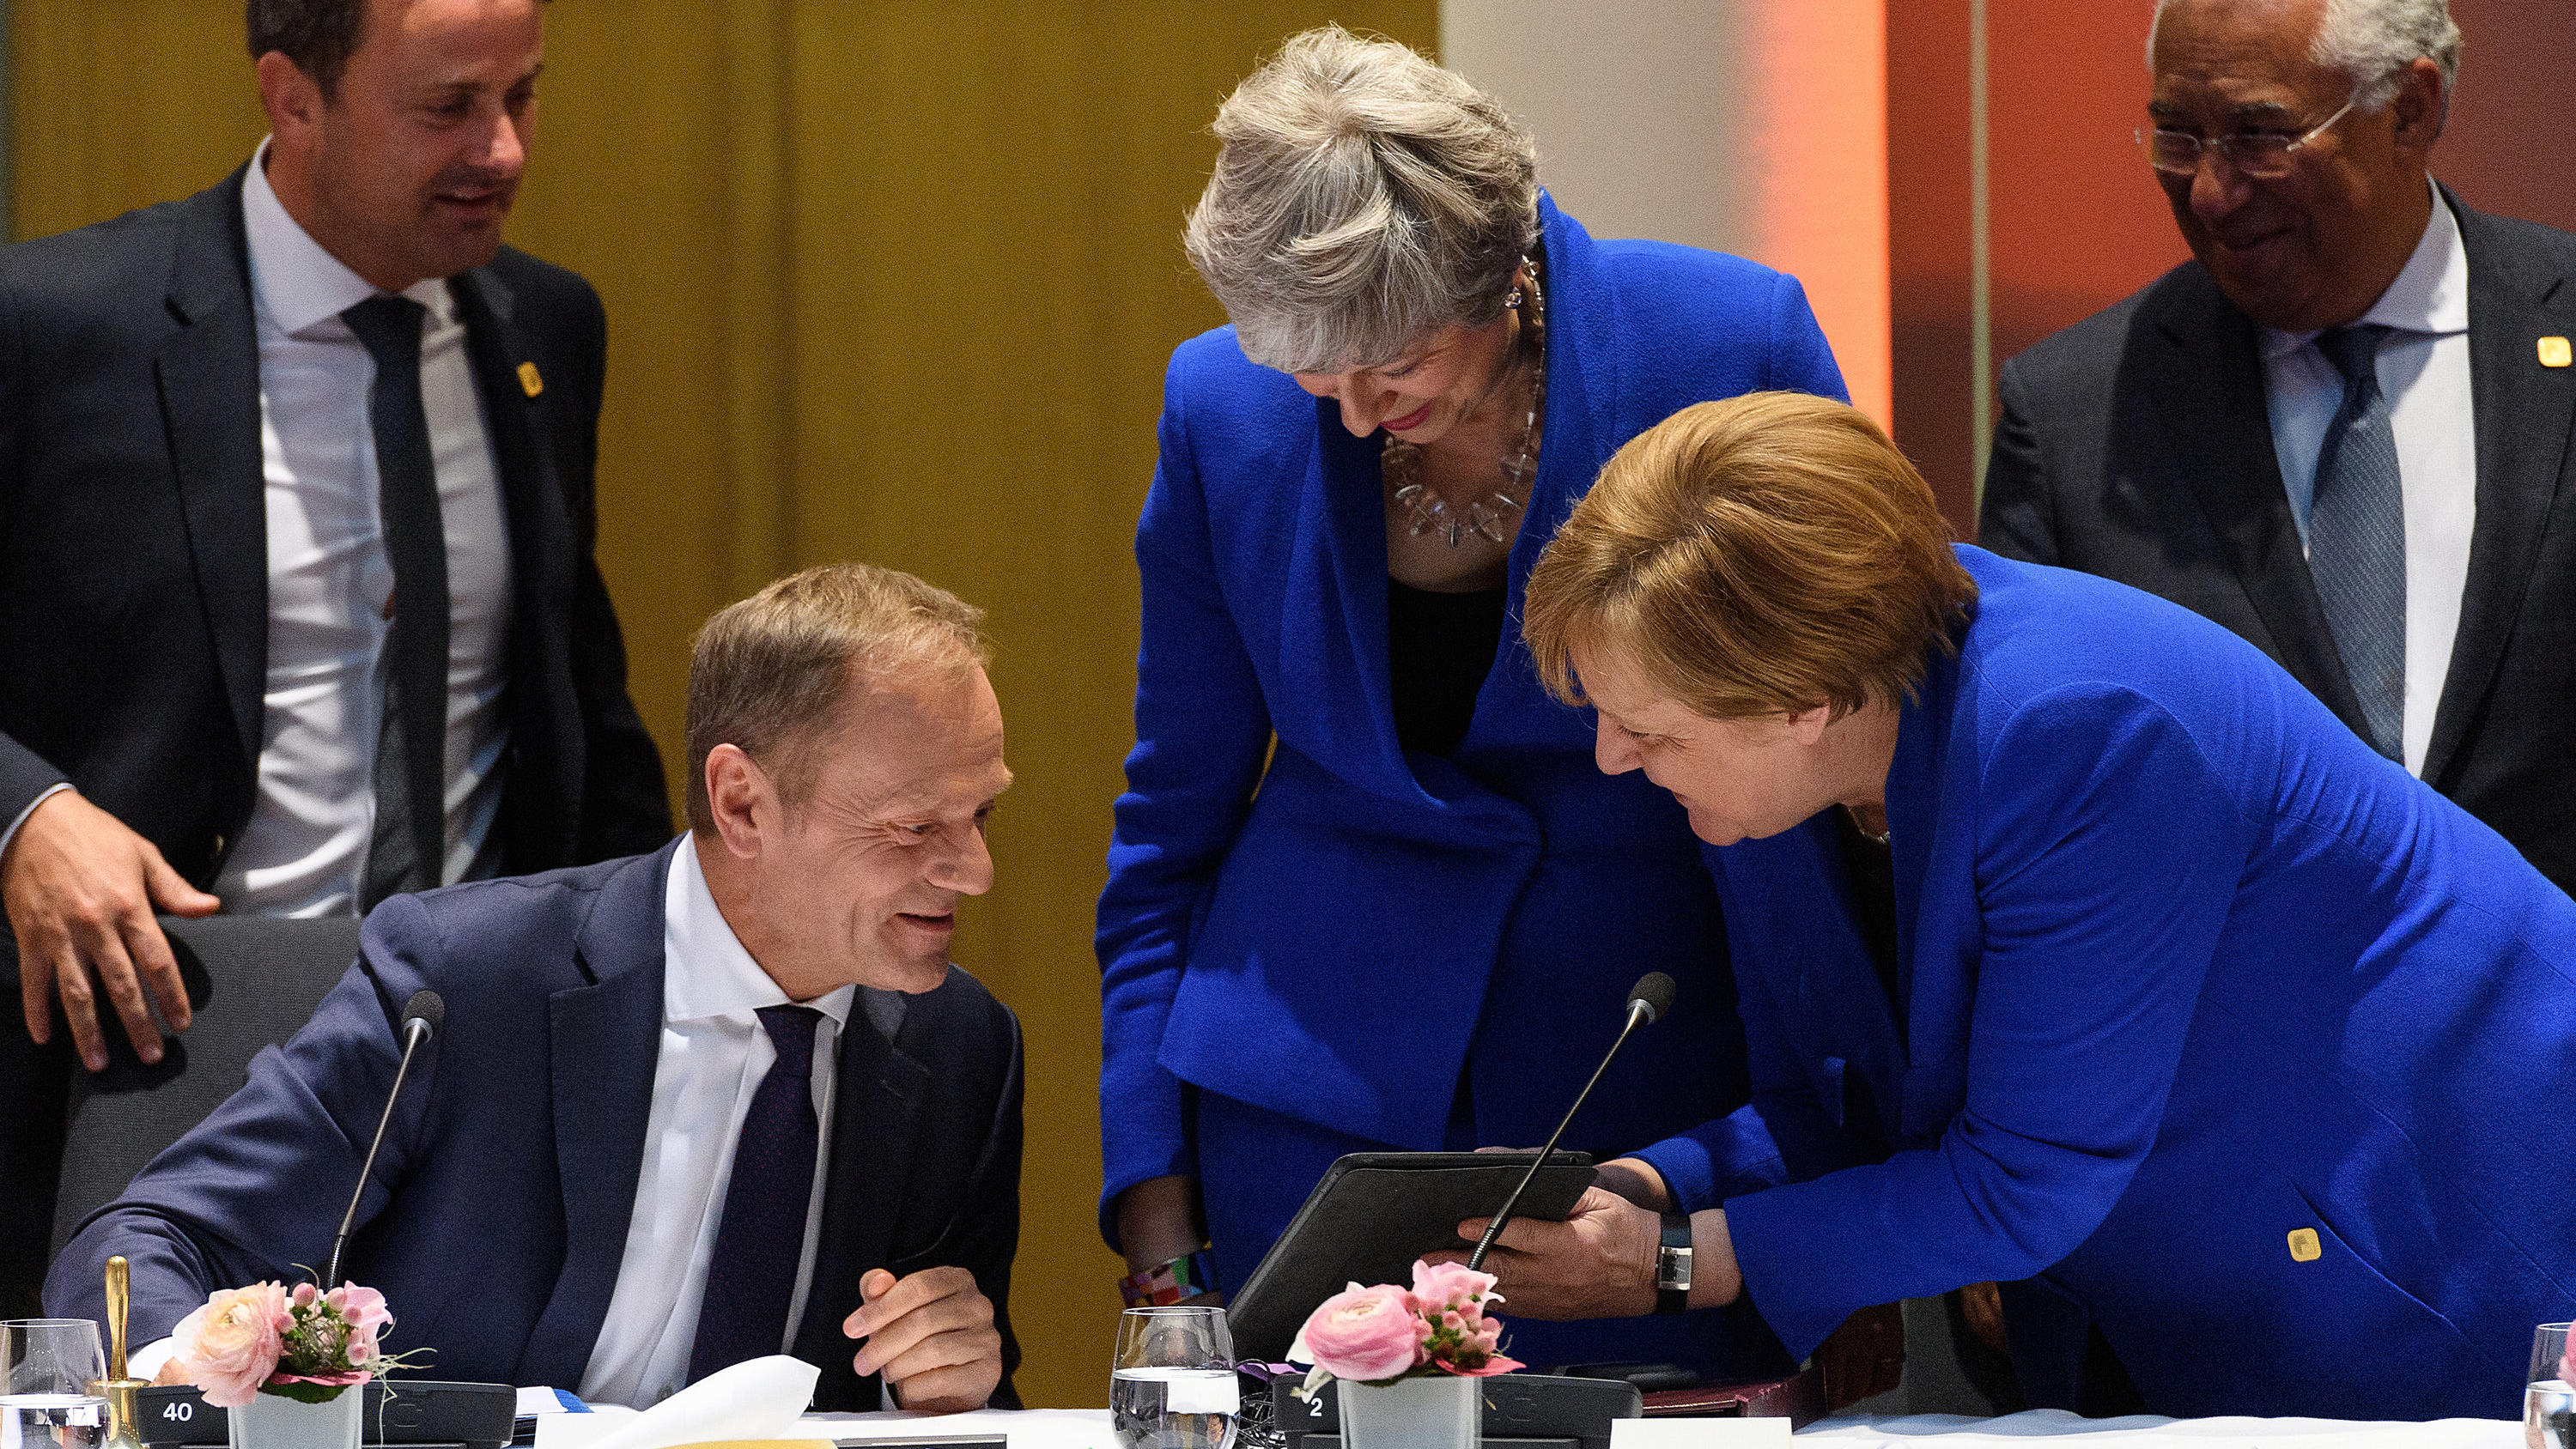 10.04.2019, Belgien, Brüssel: Donald Tusk (2.v.l.), Präsident des Europäischen Rates, Theresa May (M), Premierministerin von Großbritannien, und Bundeskanzlerin Angela Merkel (2.v.r., CDU), lachen bei einem Gespräch vor dem offiziellen Abendessen des